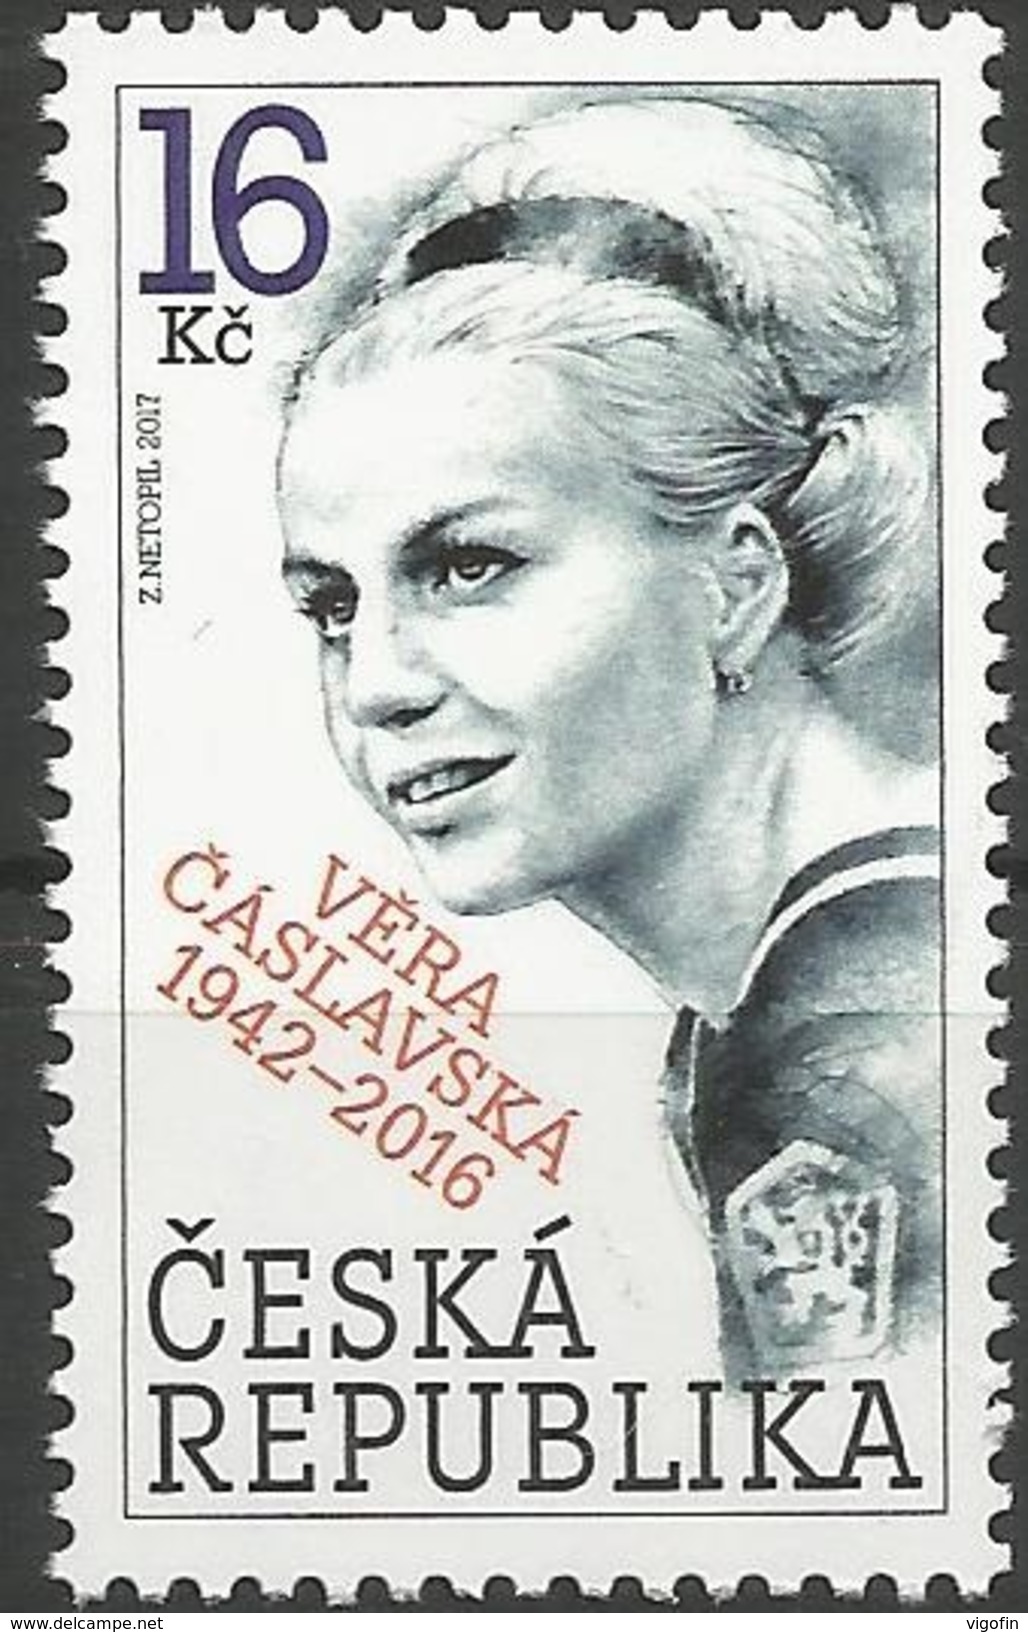 CZ 2017-924 VERS CHASLVSKA. CZECH REPUBLIK, 1 X 1v, MNH - Blocs-feuillets